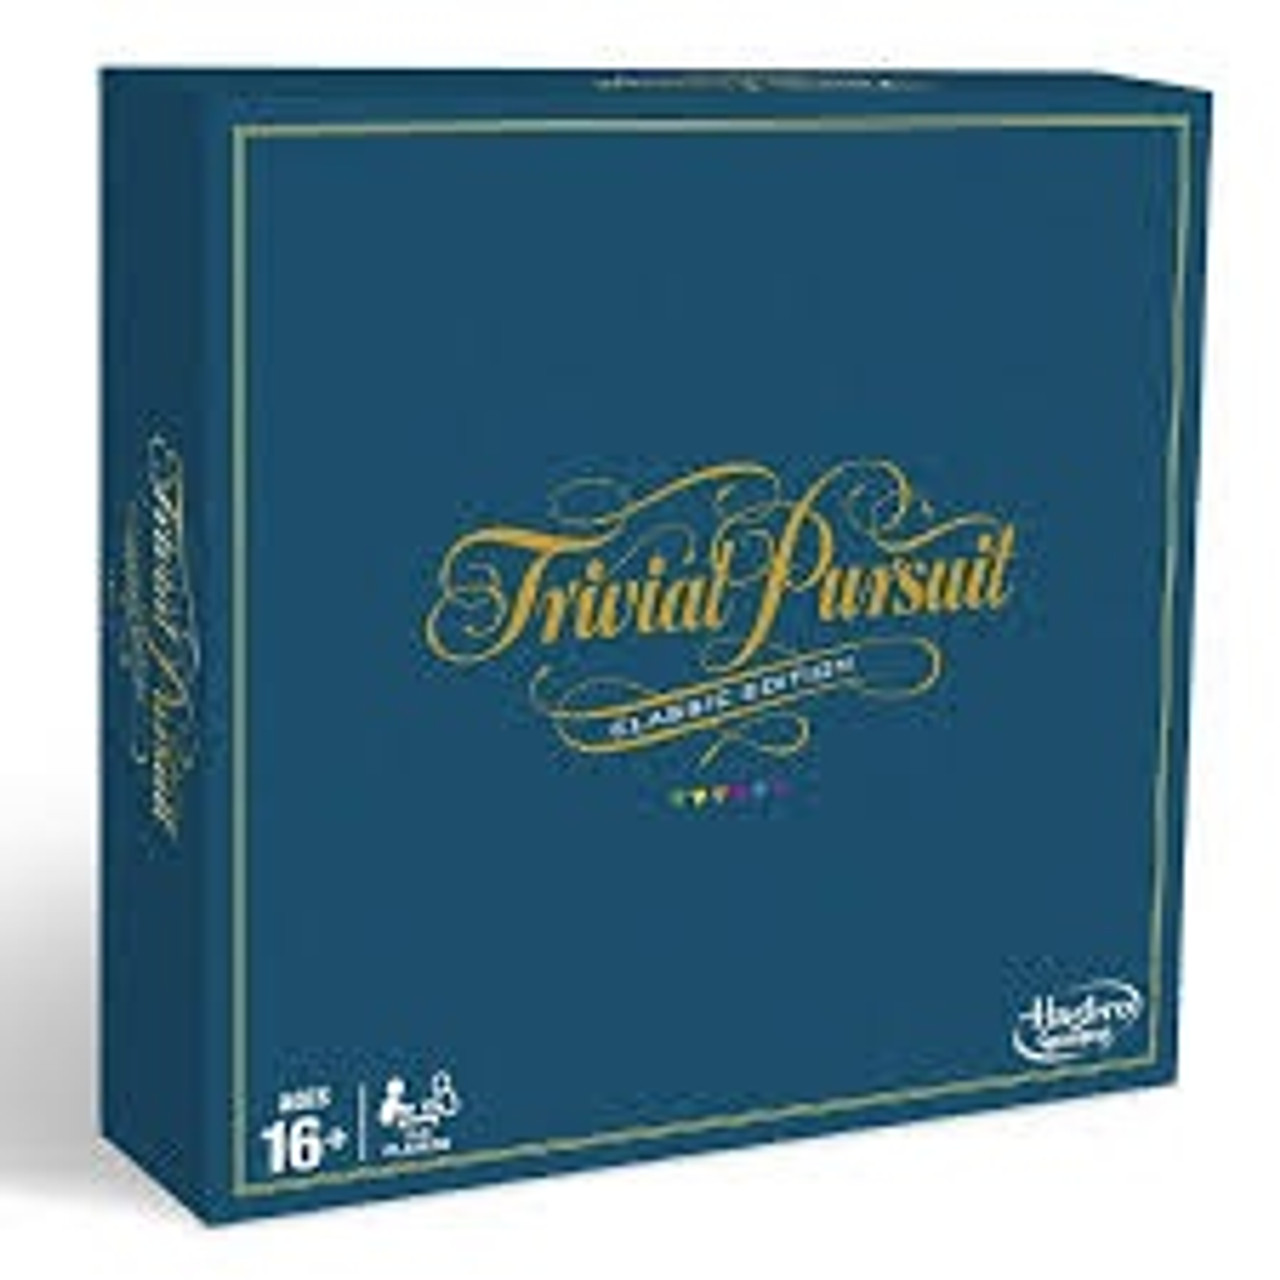 TRIVIAL PURSUIT CLASSIC UK